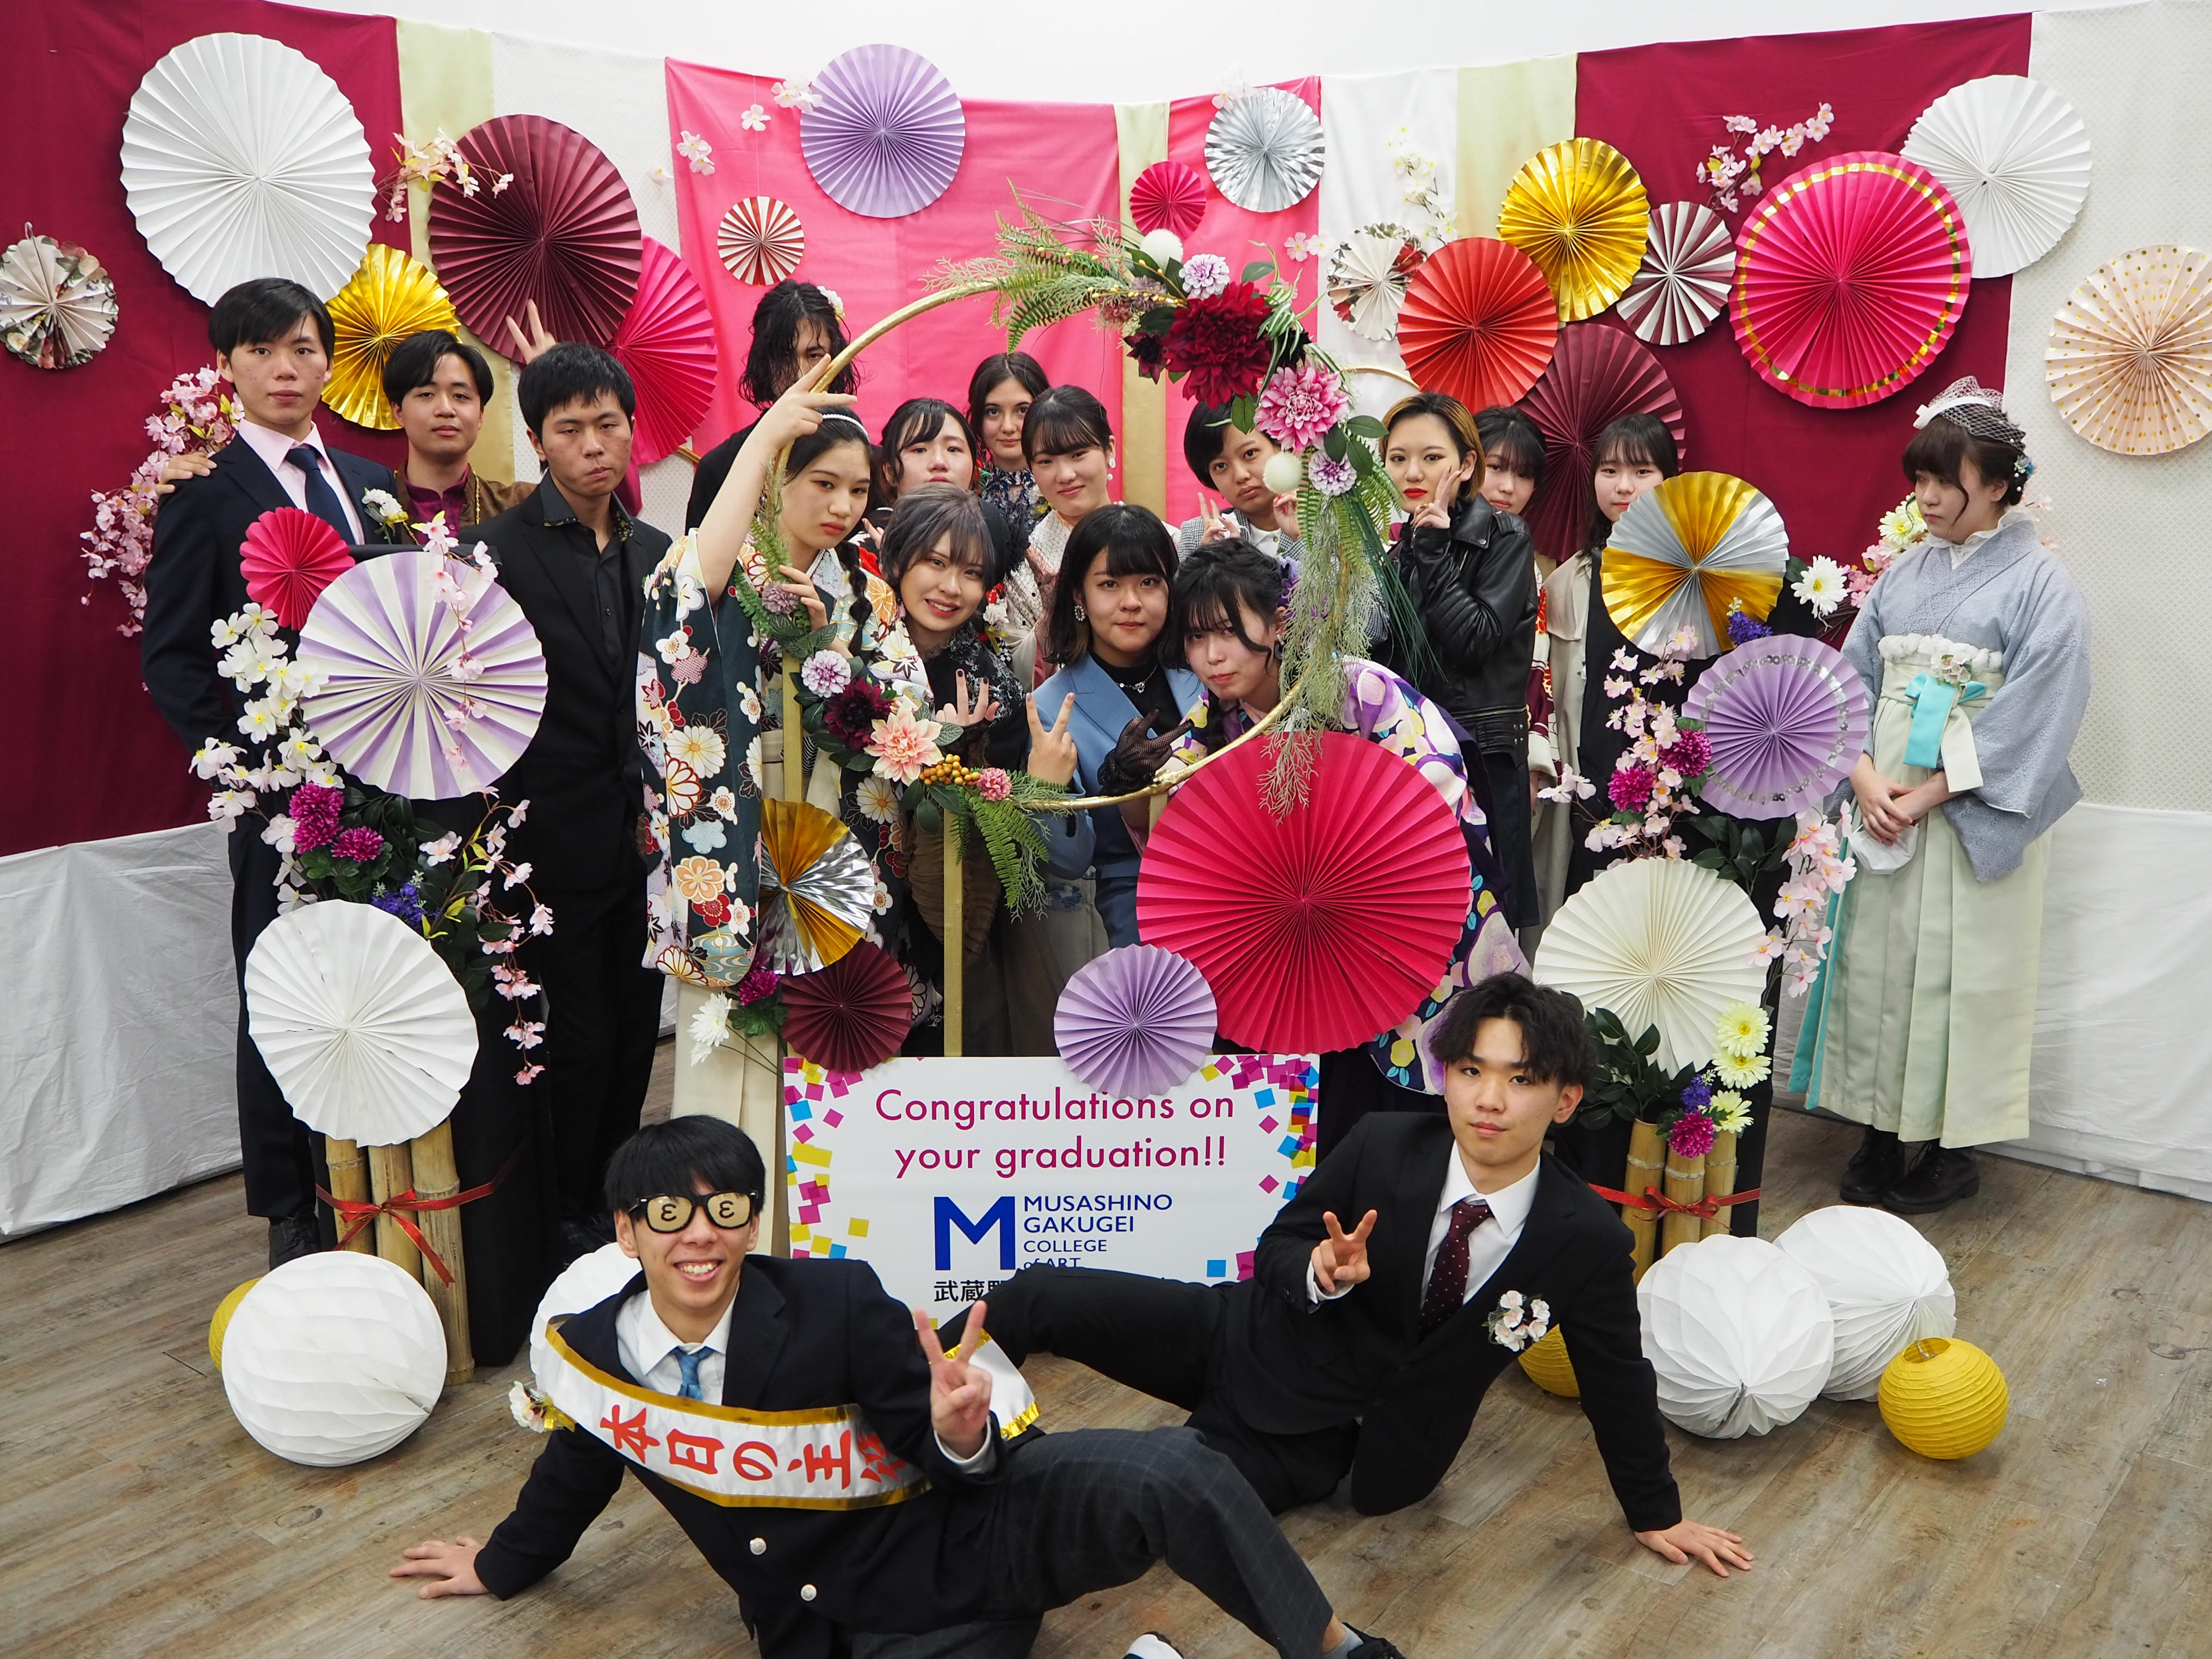 武蔵野学芸専門学校高等課程は、2020年度美術大学合格実績を発表、21名が美術大学に進学。多摩美術大学に10名、武蔵野美術大学に5名が合格。